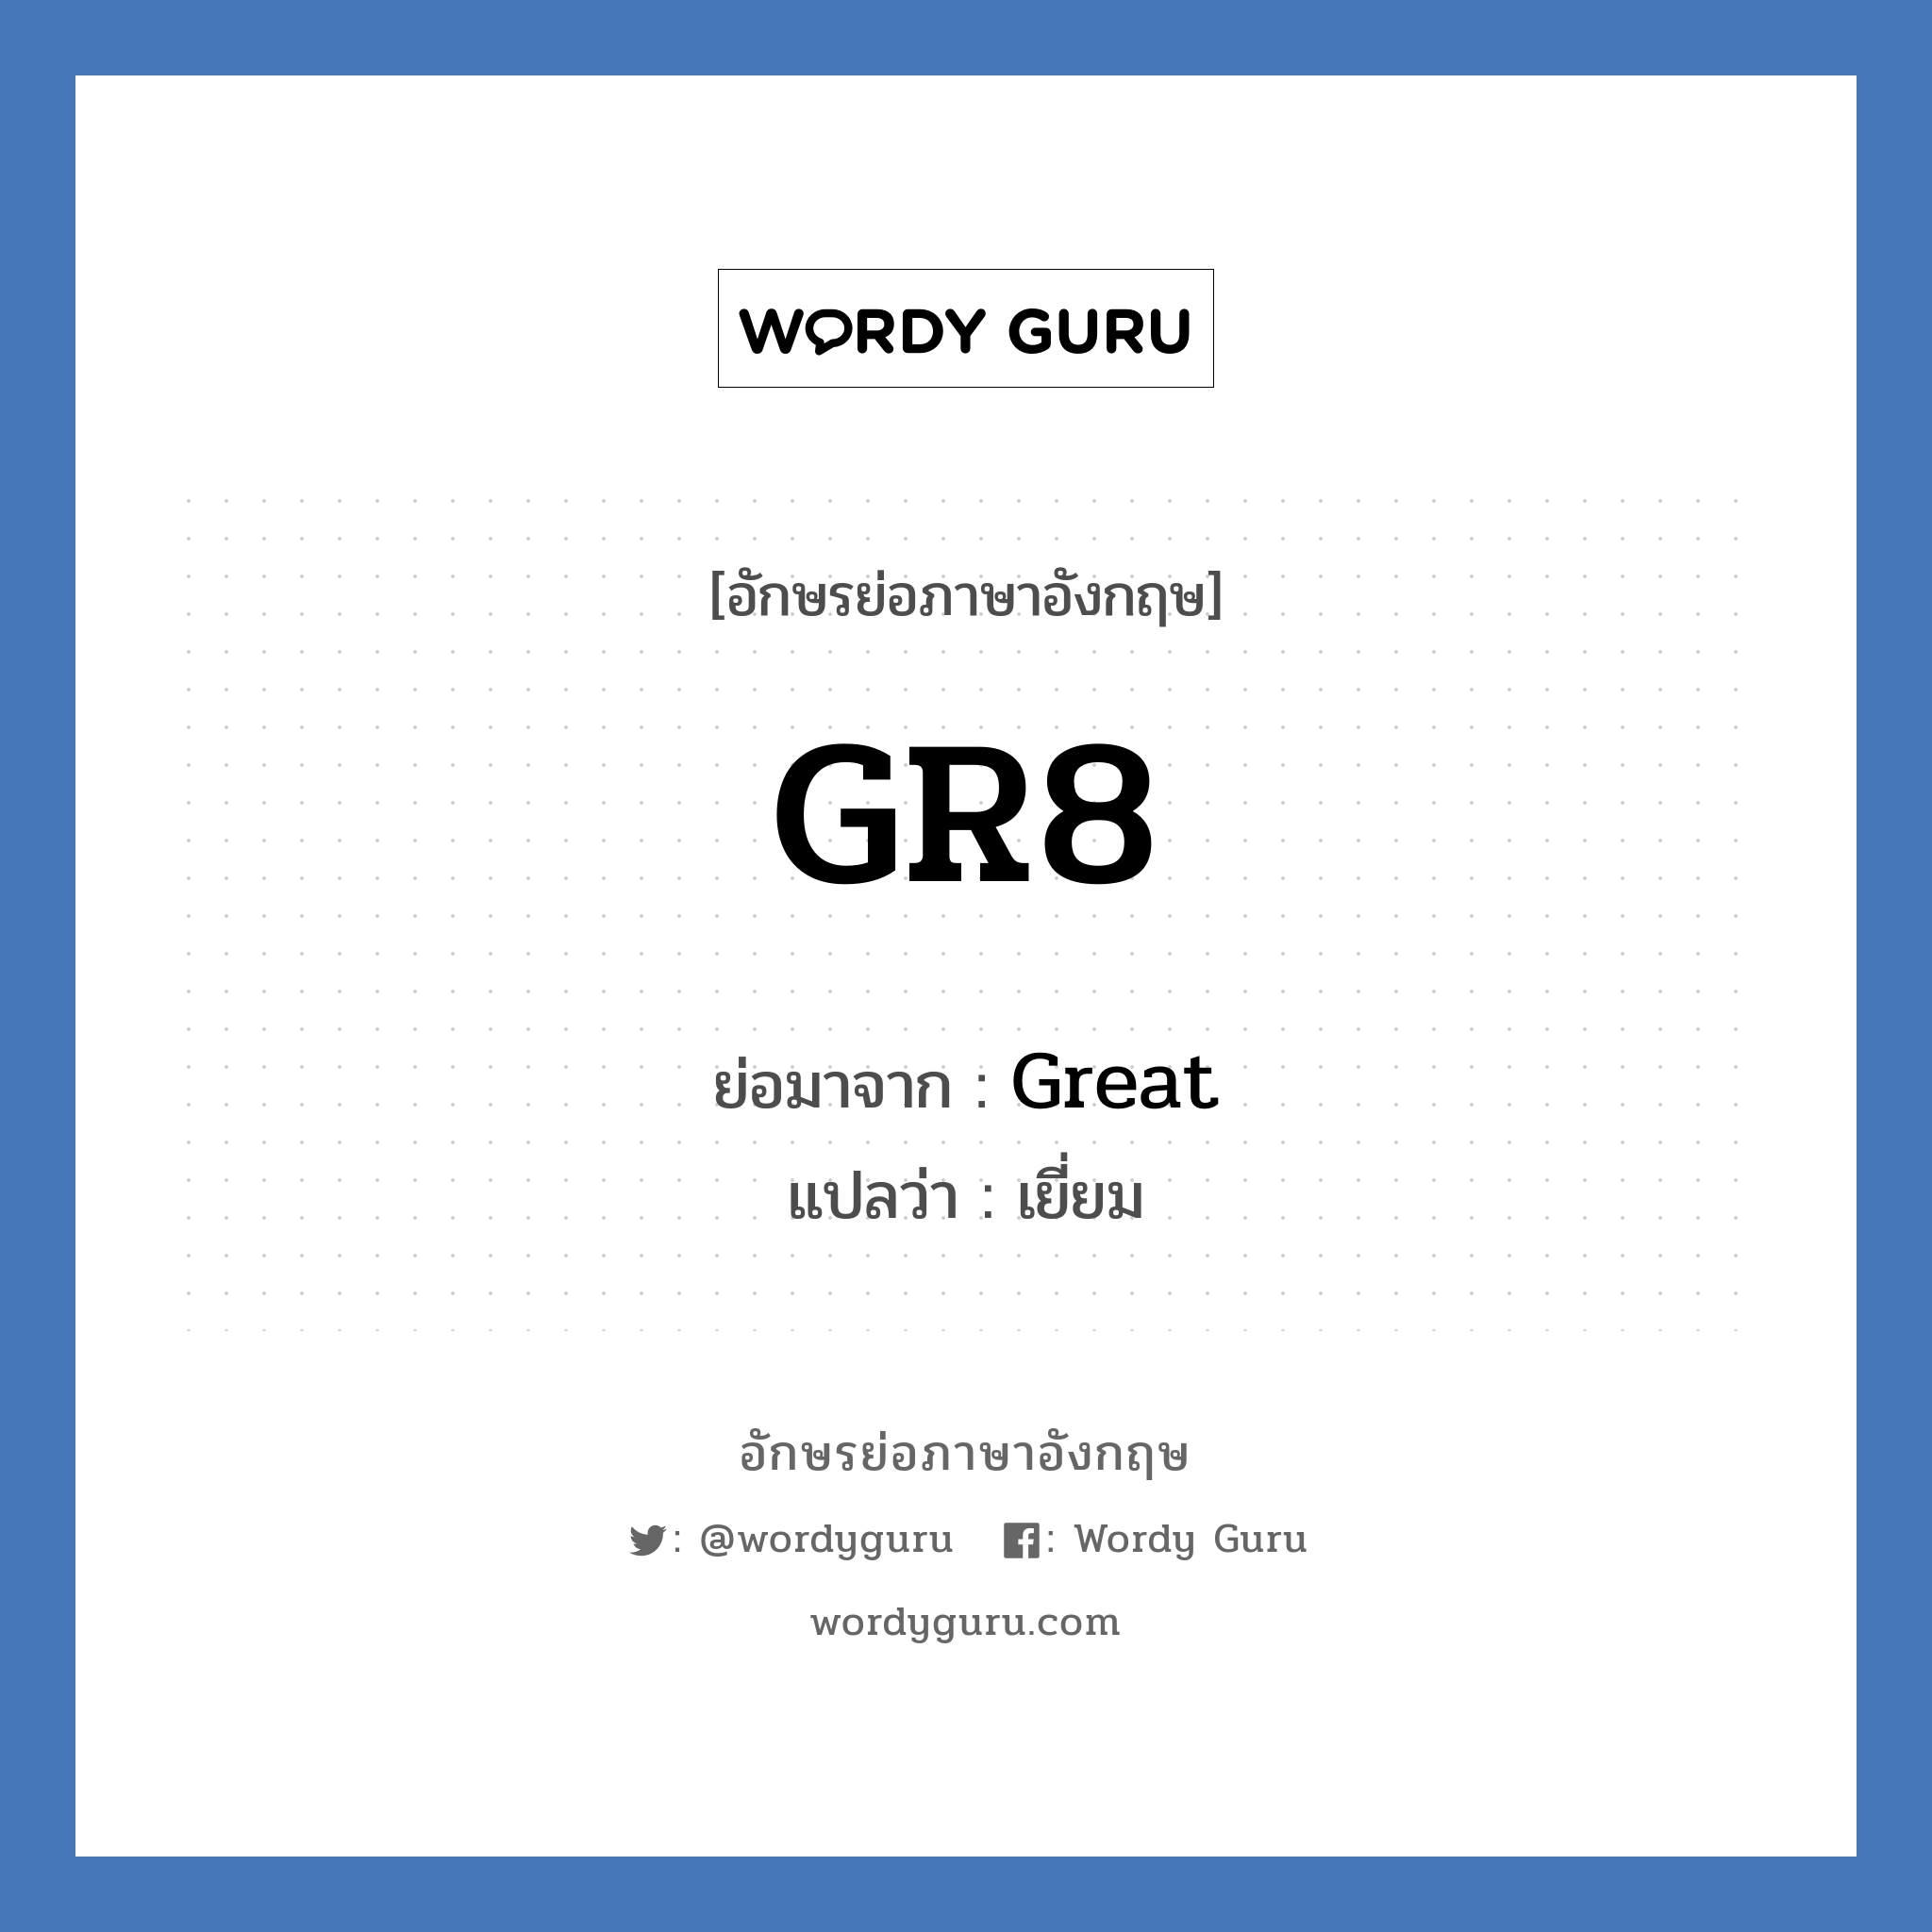 GR8 ย่อมาจาก? แปลว่า?, อักษรย่อภาษาอังกฤษ GR8 ย่อมาจาก Great แปลว่า เยี่ยม